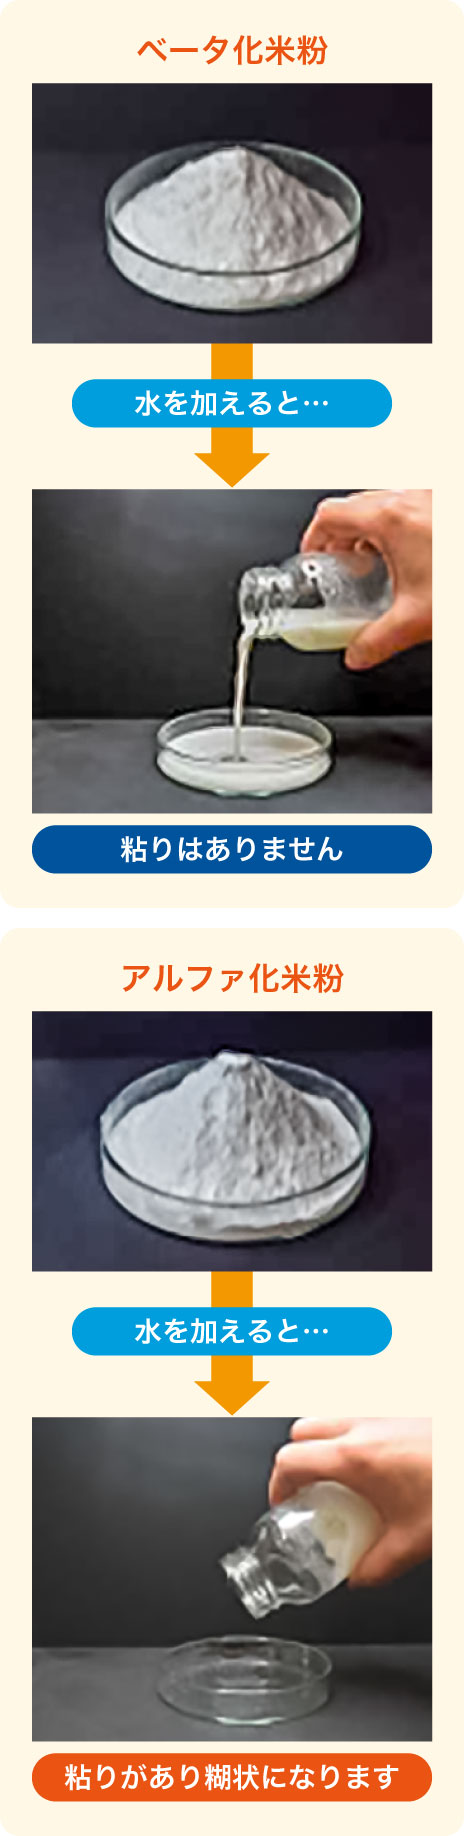 米粉の種類